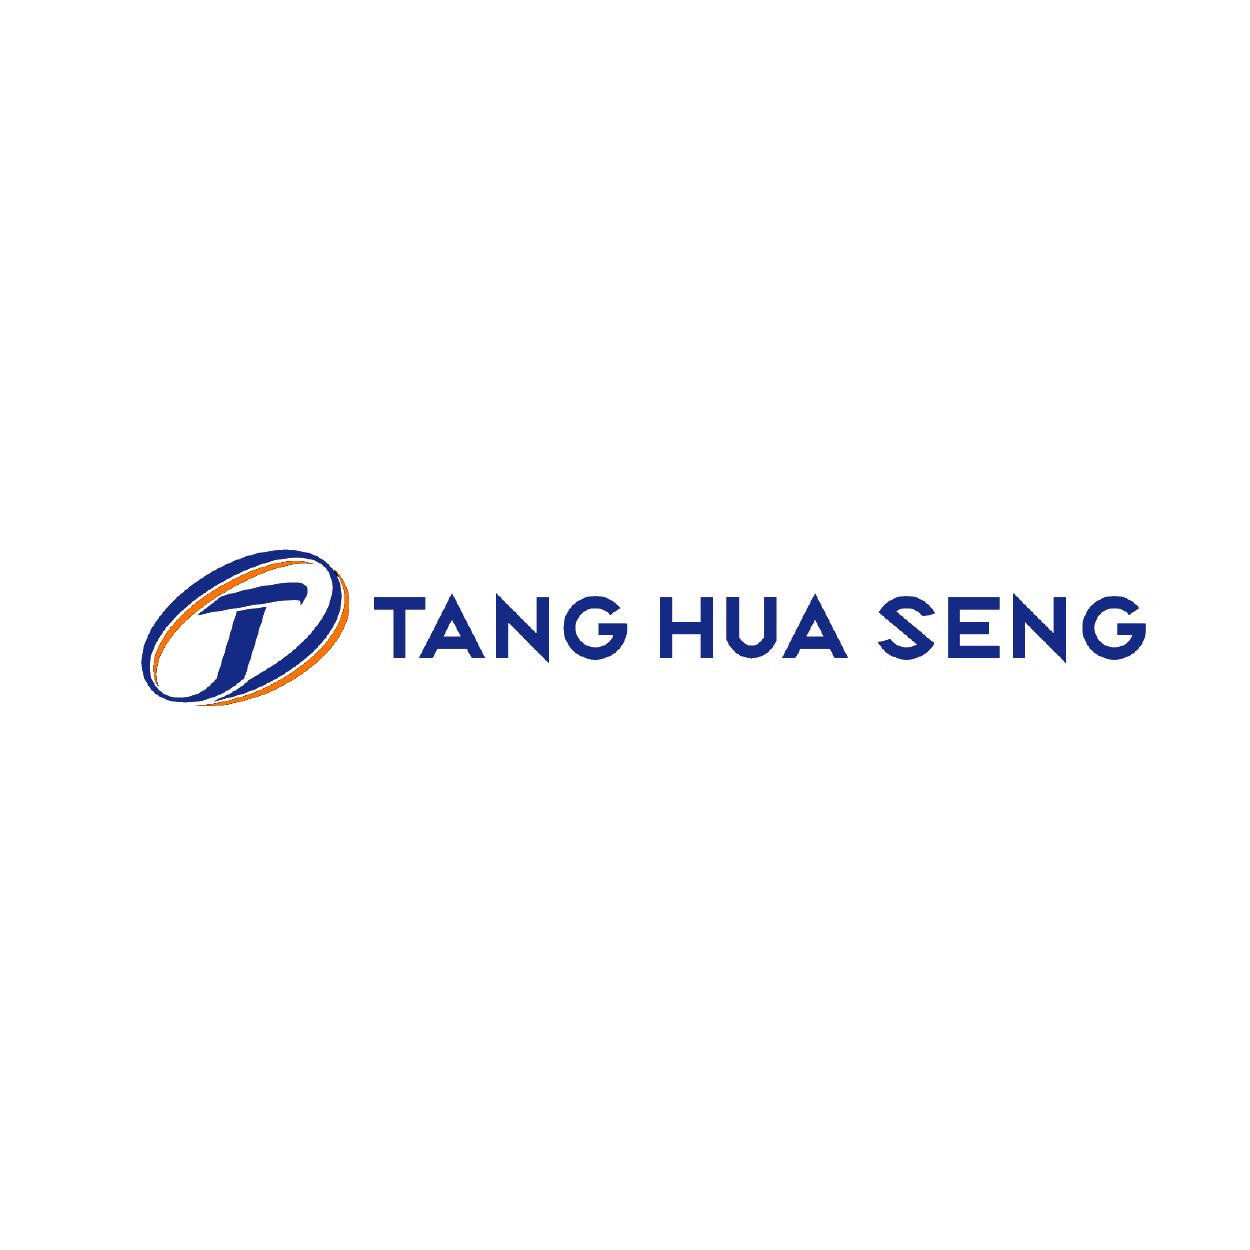 Tang Hua Seng